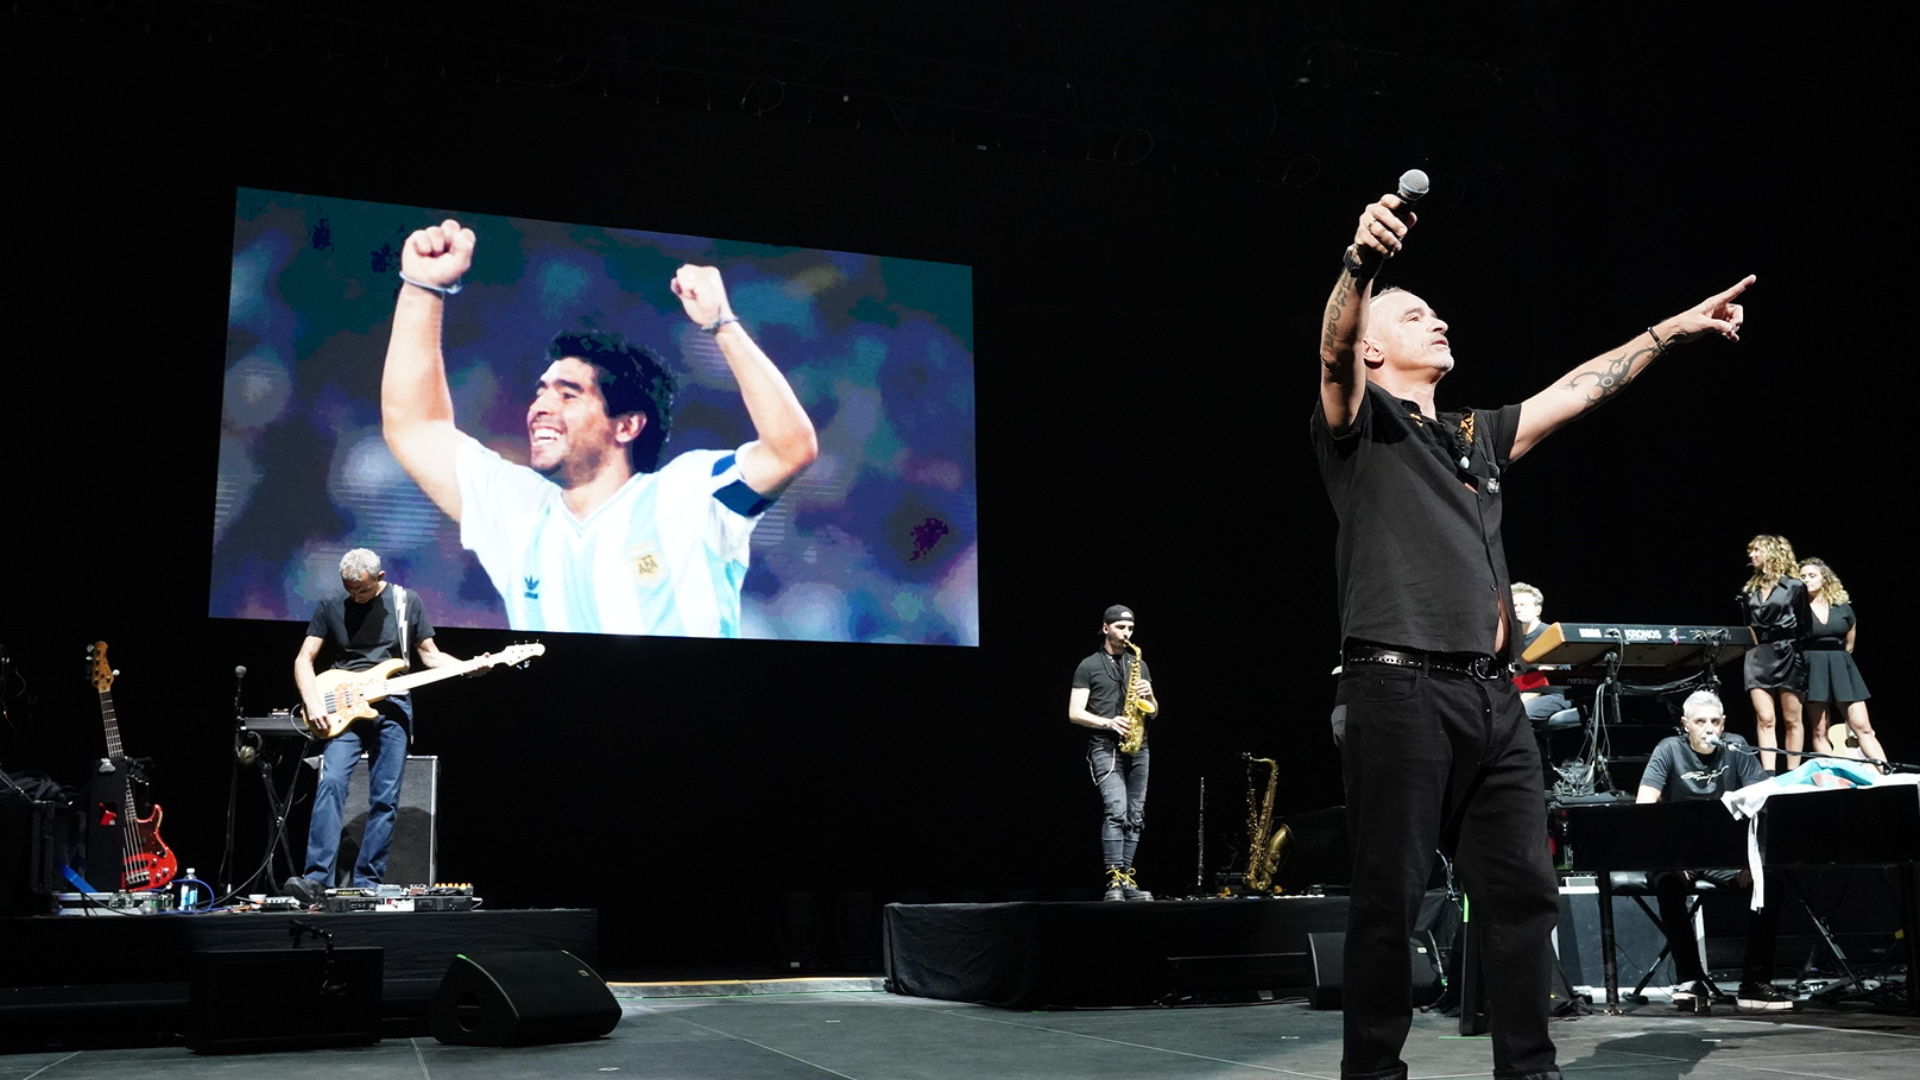 Eros Ramazzotti è tornato in Argentina dopo 3 anni e ha dedicato il suo spettacolo a Maradona – GENTE Online